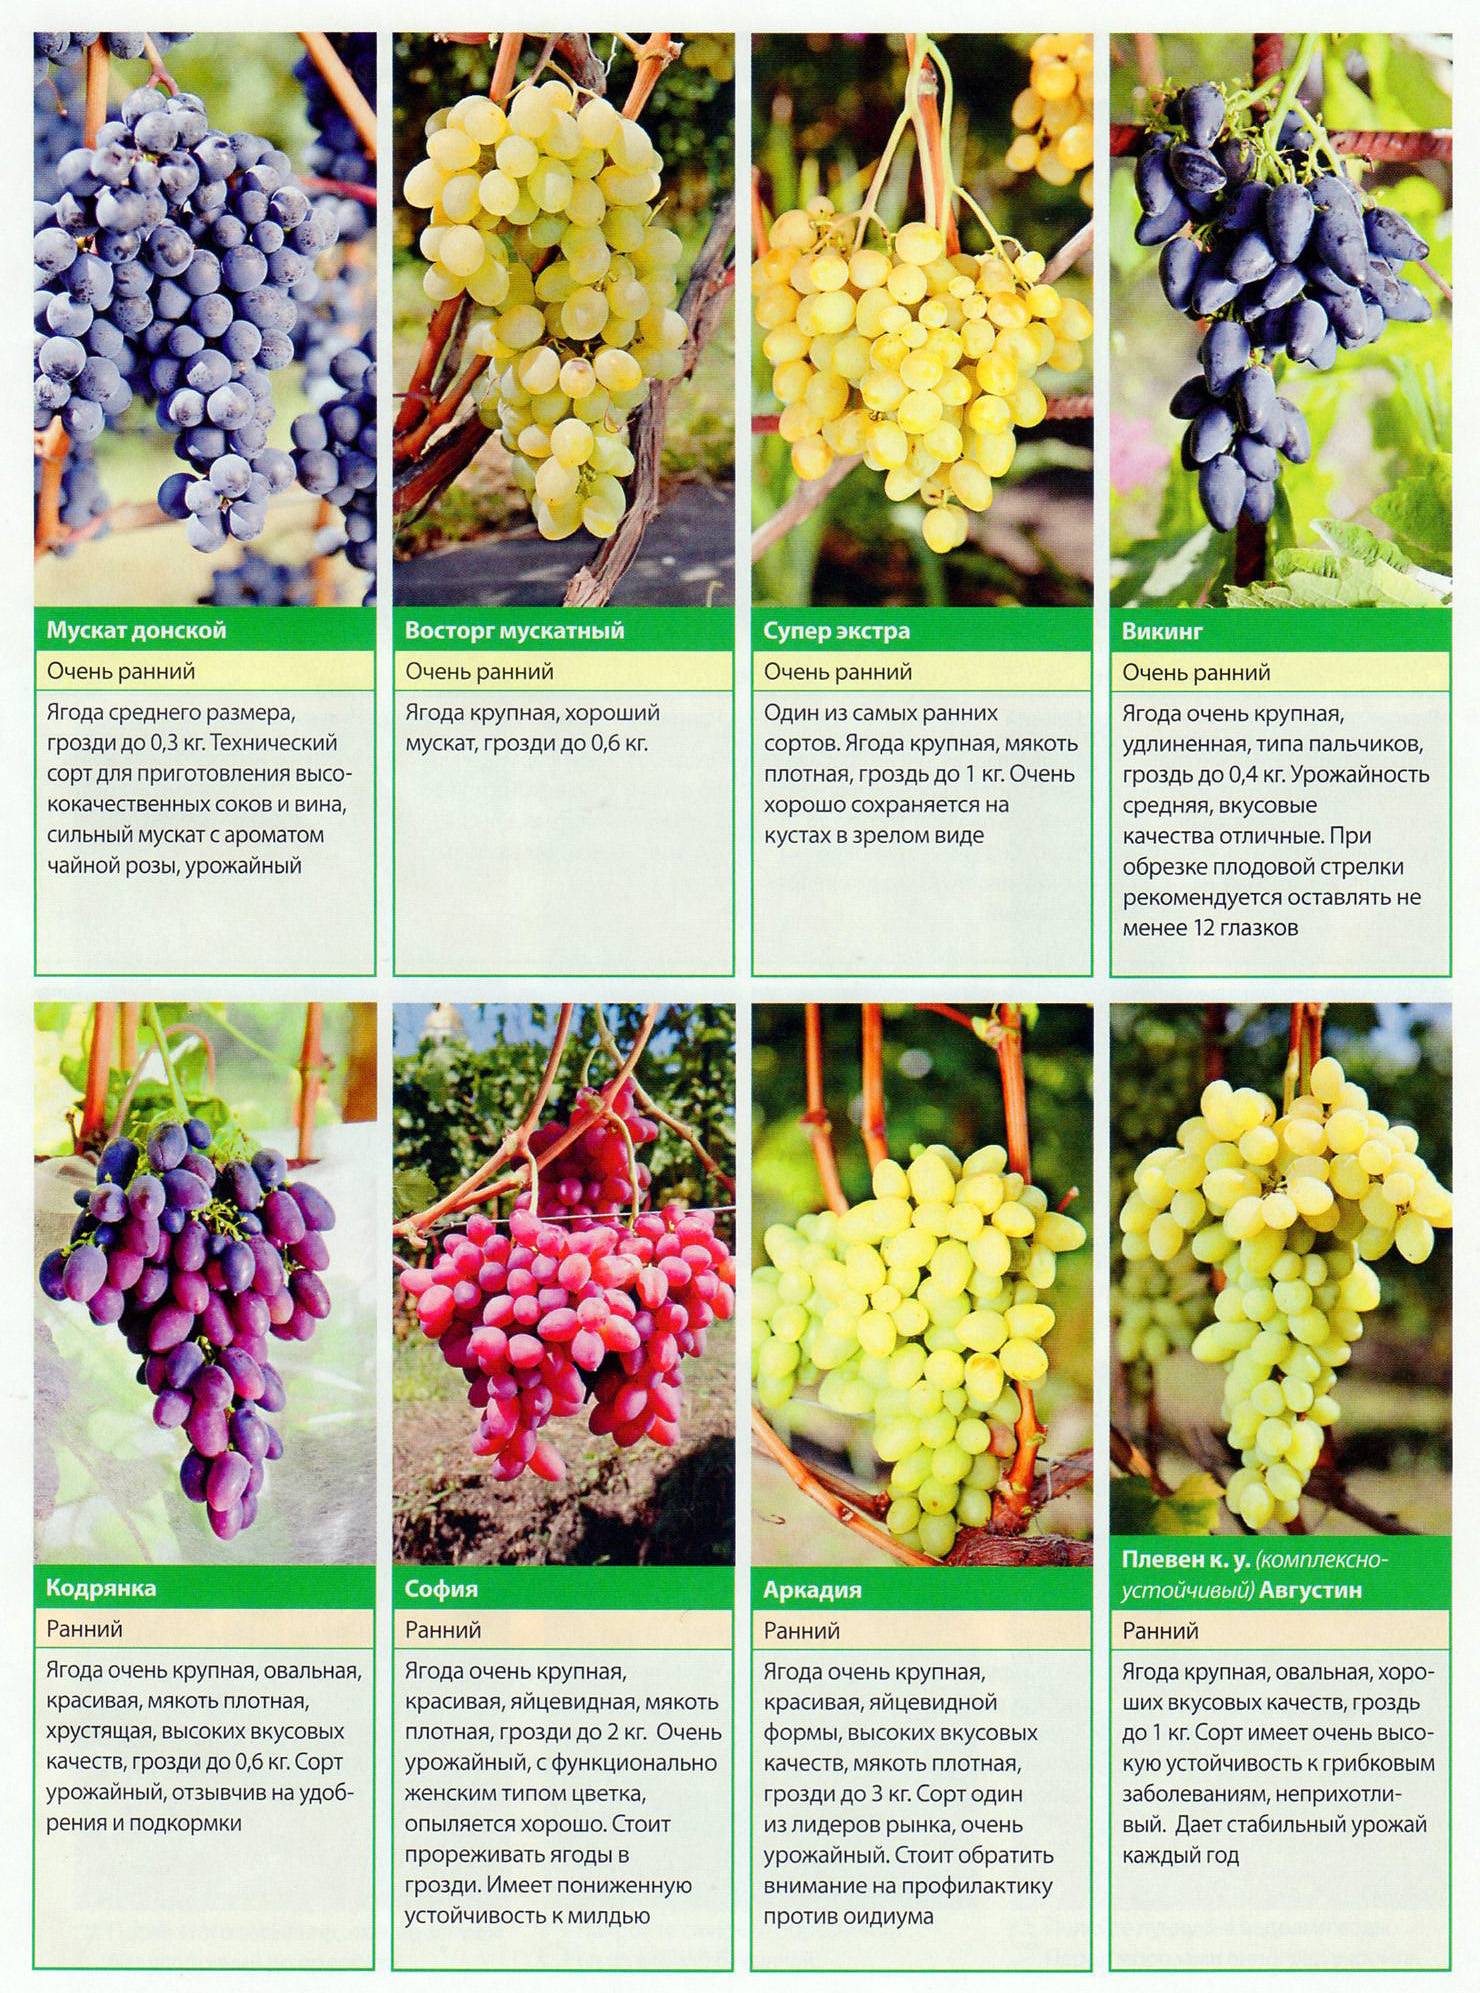 Описание и технология выращивания винограда сорта Супер Экстра